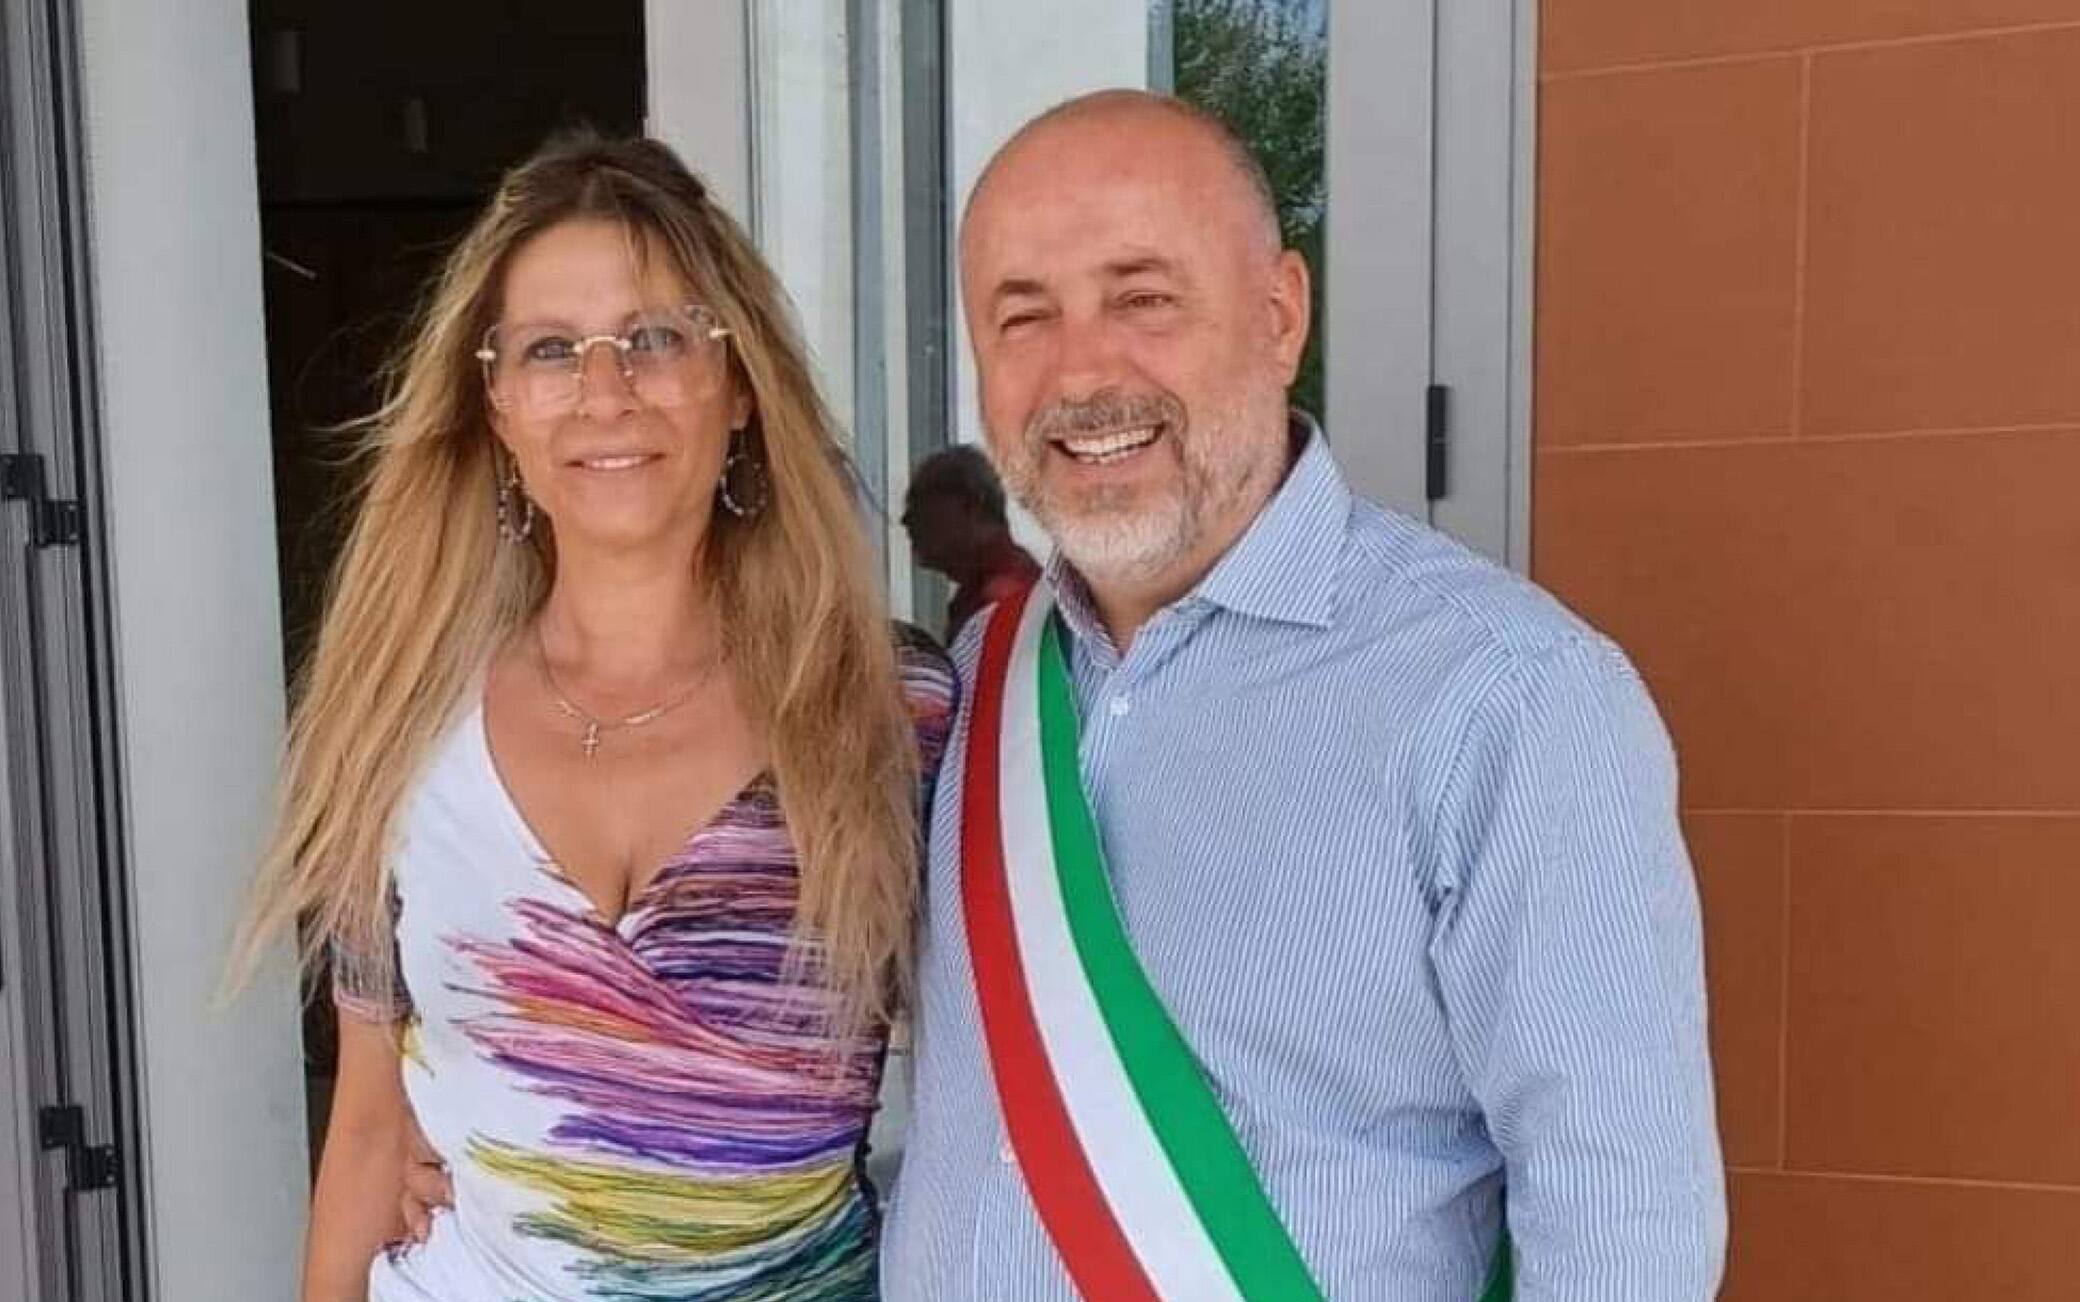 L'assessora con delega al personale e all'anagrafe di Ardea della Lega, Luana Ludovici, con il sindaco di Ardea, Maurizio Cremonini (Fdi), in una foto tratta dal profilo Facebook della donna.FACEBOOK LUANA LUDOVICI+++ATTENZIONE LA FOTO NON PUO' ESSERE PUBBLICATA O RIPRODOTTA SENZA L'AUTORIZZAZIONE DELLA FONTE DI ORIGINE CUI SI RINVIA+++ (NPK)